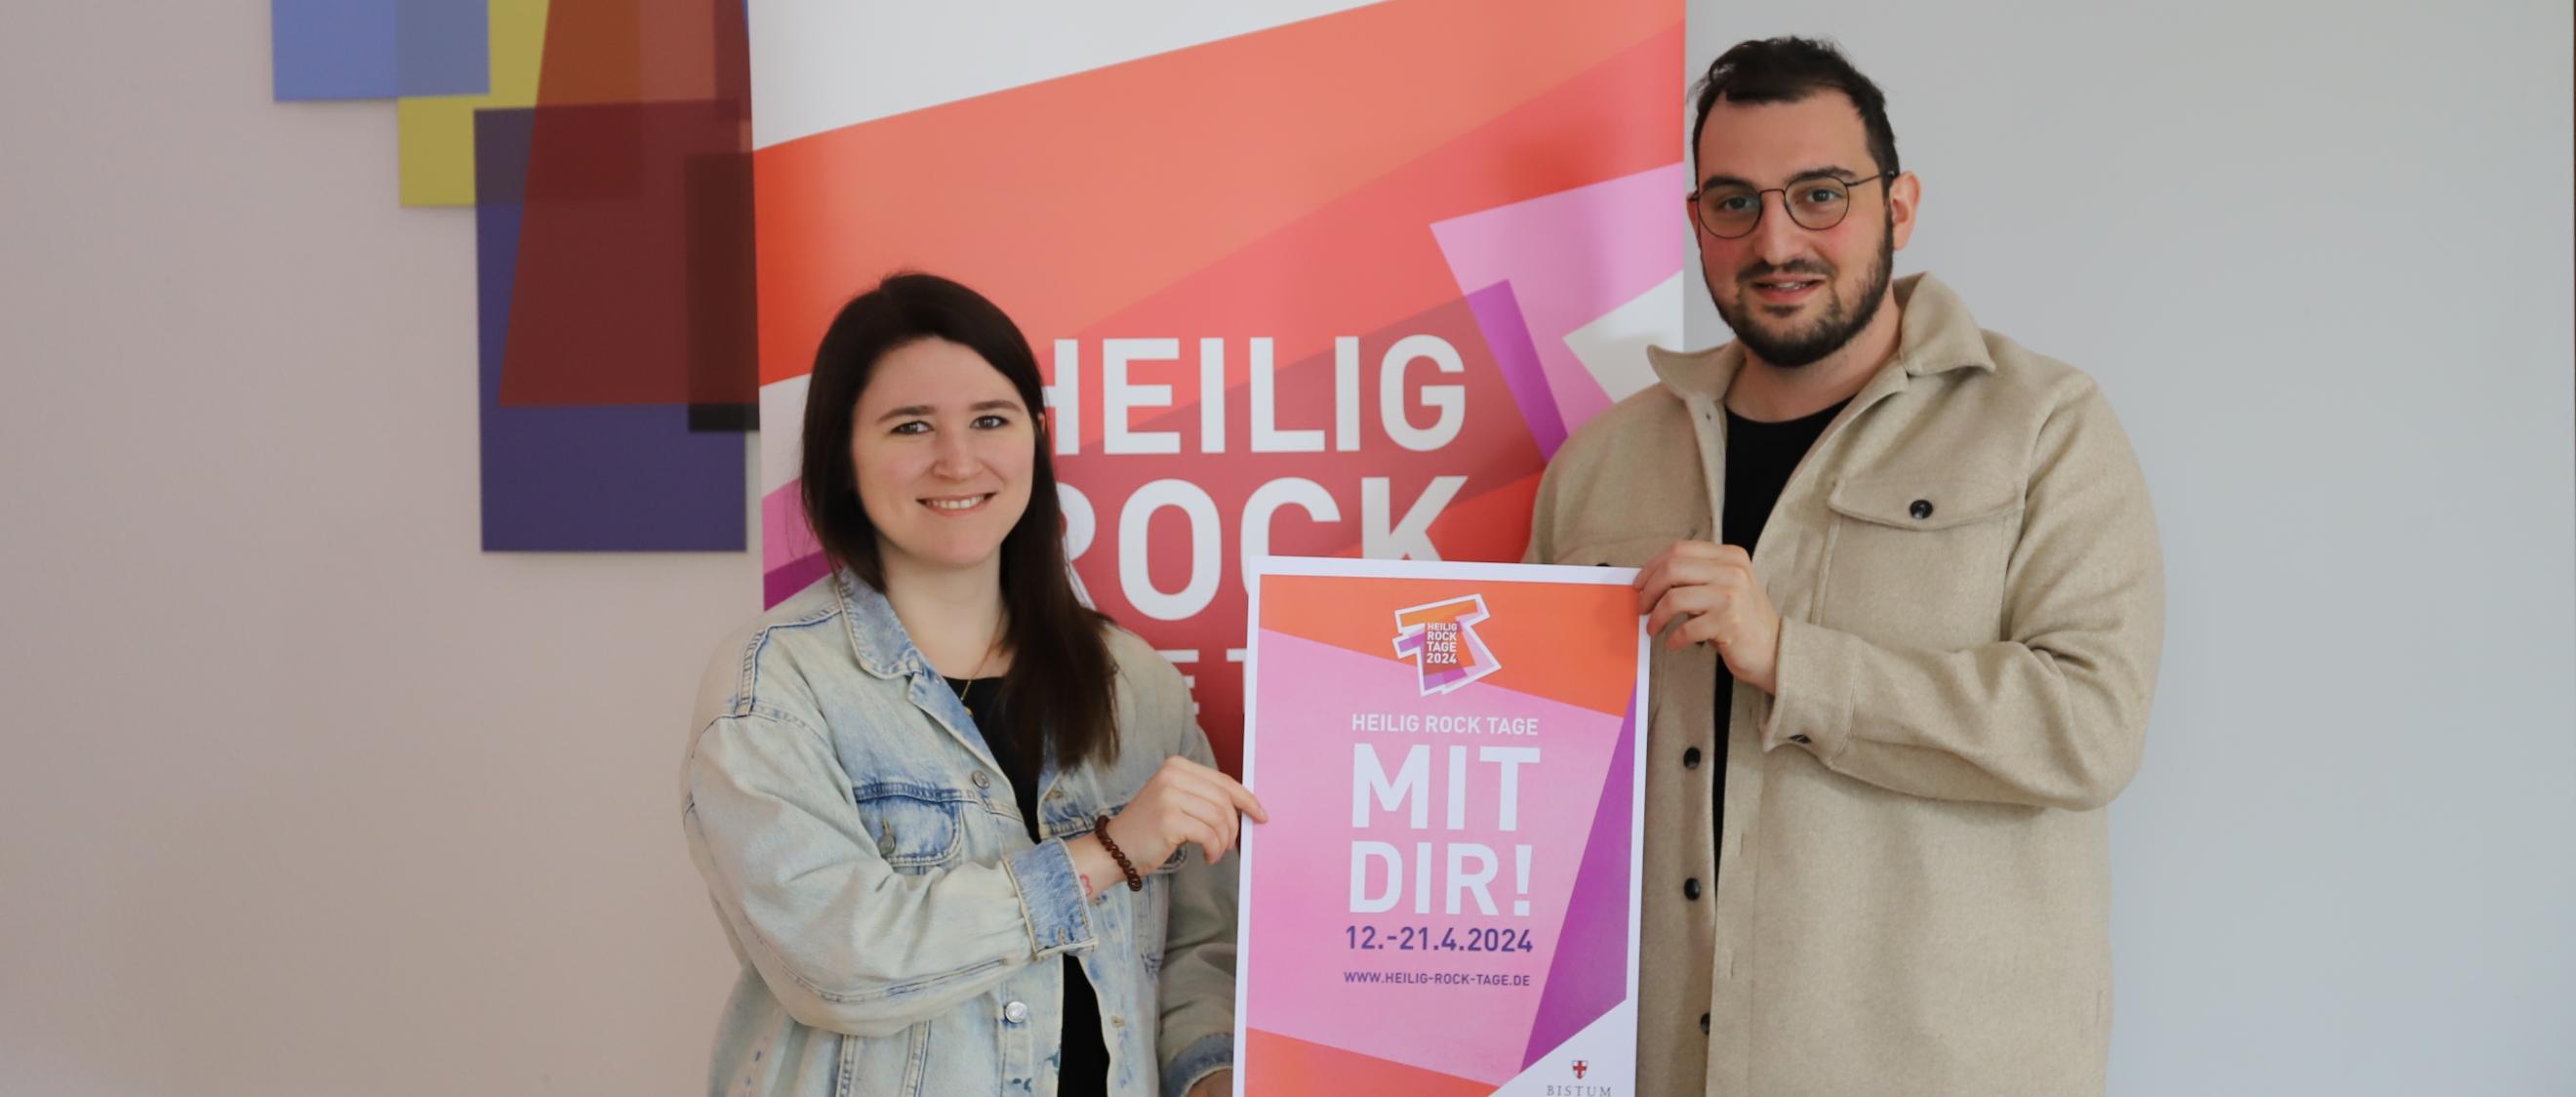 Isabell Krohn und Dario Tumminelli freuen sich auf die vielen Besucherinnen und Besucher bei den Heilig Rock Tagen in Trier